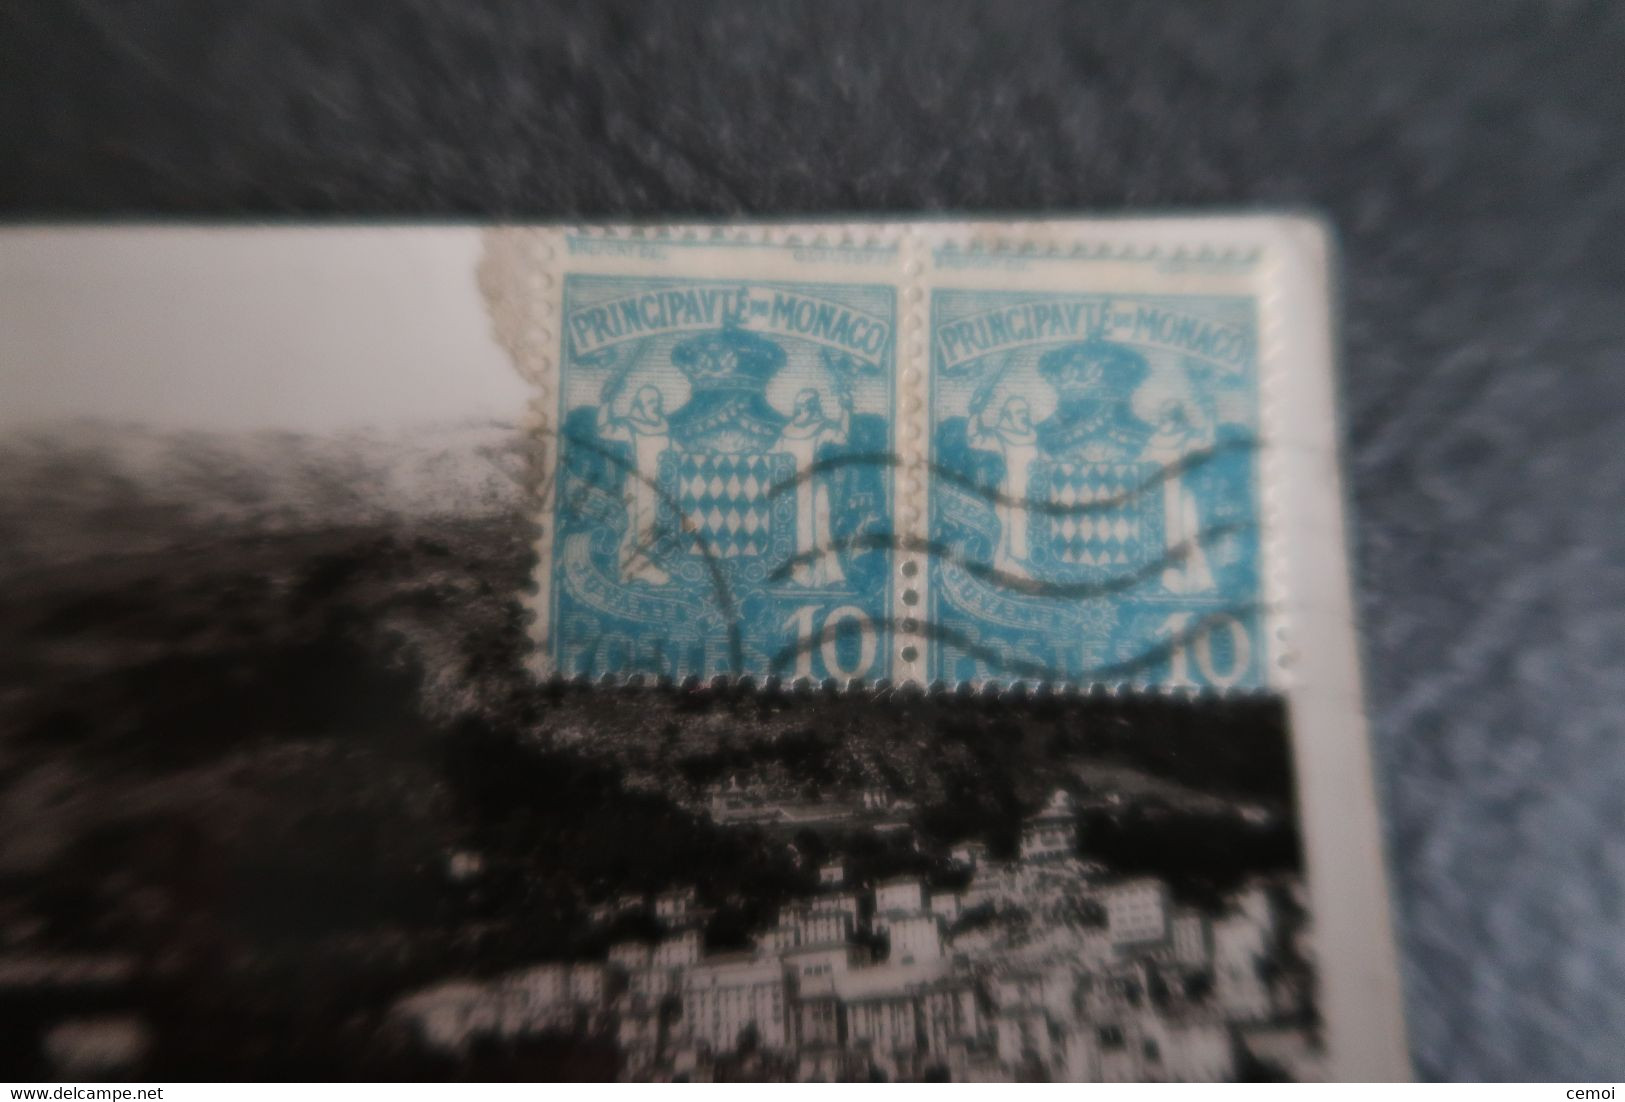 Lot de 18 CPA/CPSM de MONACO toutes timbrées - 23 timbres monégasques dont 19 timbres différents + 2 timbres taxe frança